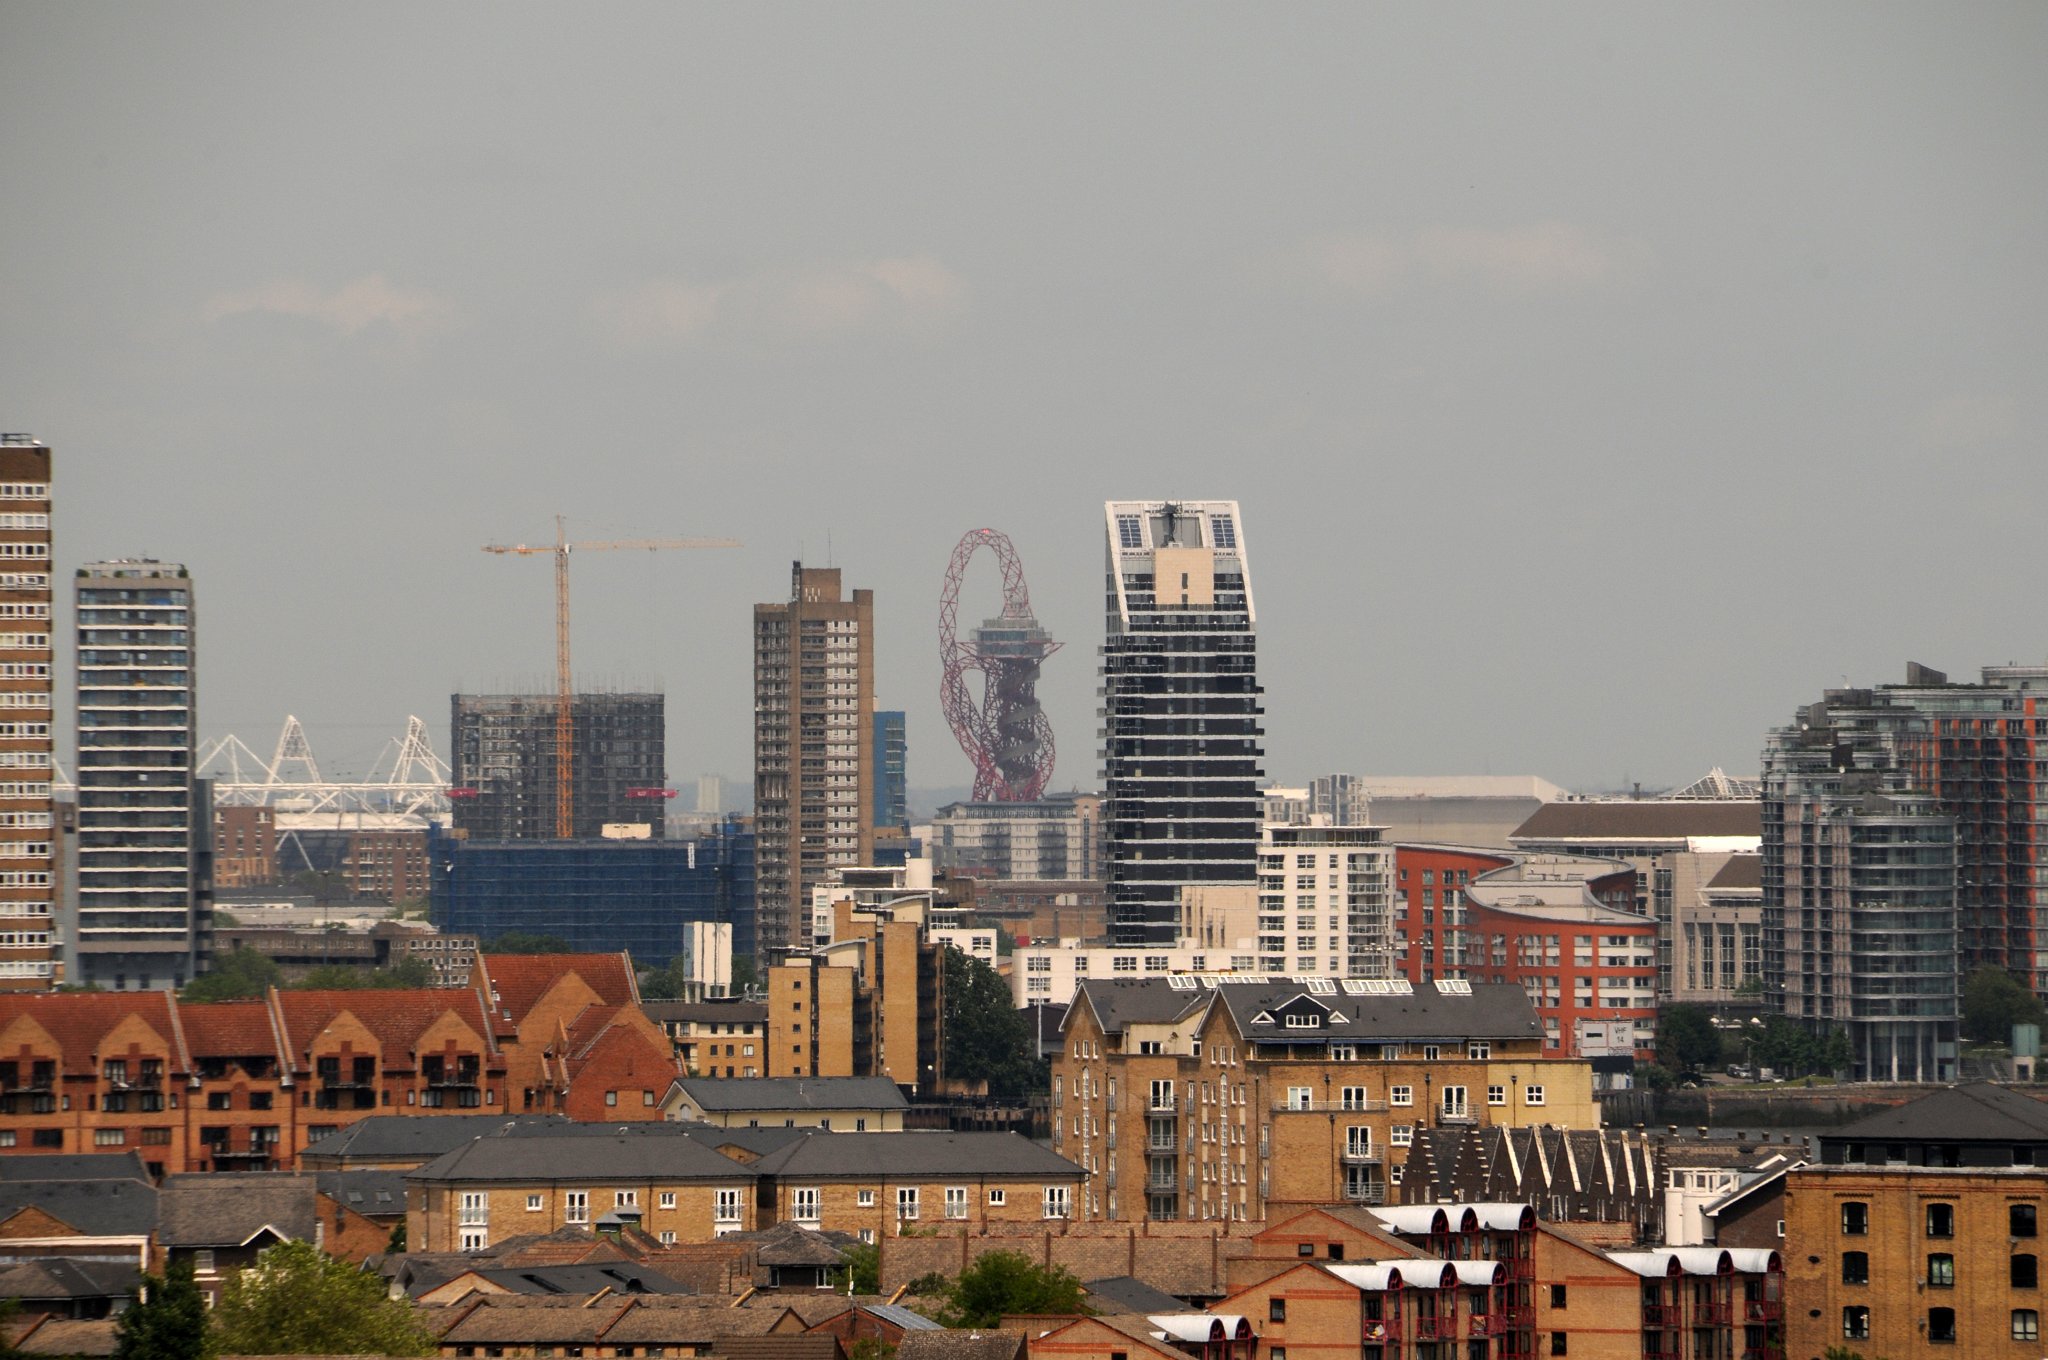 DSC_4108_2.jpg - Celosvětově uznávaný umělec Anish Kapoor navrhl 115 metrů vysokou veřejně přístupnou věž ArcelorMittal Orbit. Z červené věže ve tvaru připomínajícím trumpetu o výšce téměř 115 metrů mají návštěvníci výhled na krajinu Londýna. Věž je pojmenována po ocelářském magnátovi a nejbohatším muži v Londýně Lakshmi Mittalovi. Dílo, které spotřebovalo asi 1400 tun oceli a stálo asi 20 mil. liber. Stavbu provedli Kapoor spolu s Arup Engineers. Podle Kapoora se návrh věže inspiroval Babylonskou věží.